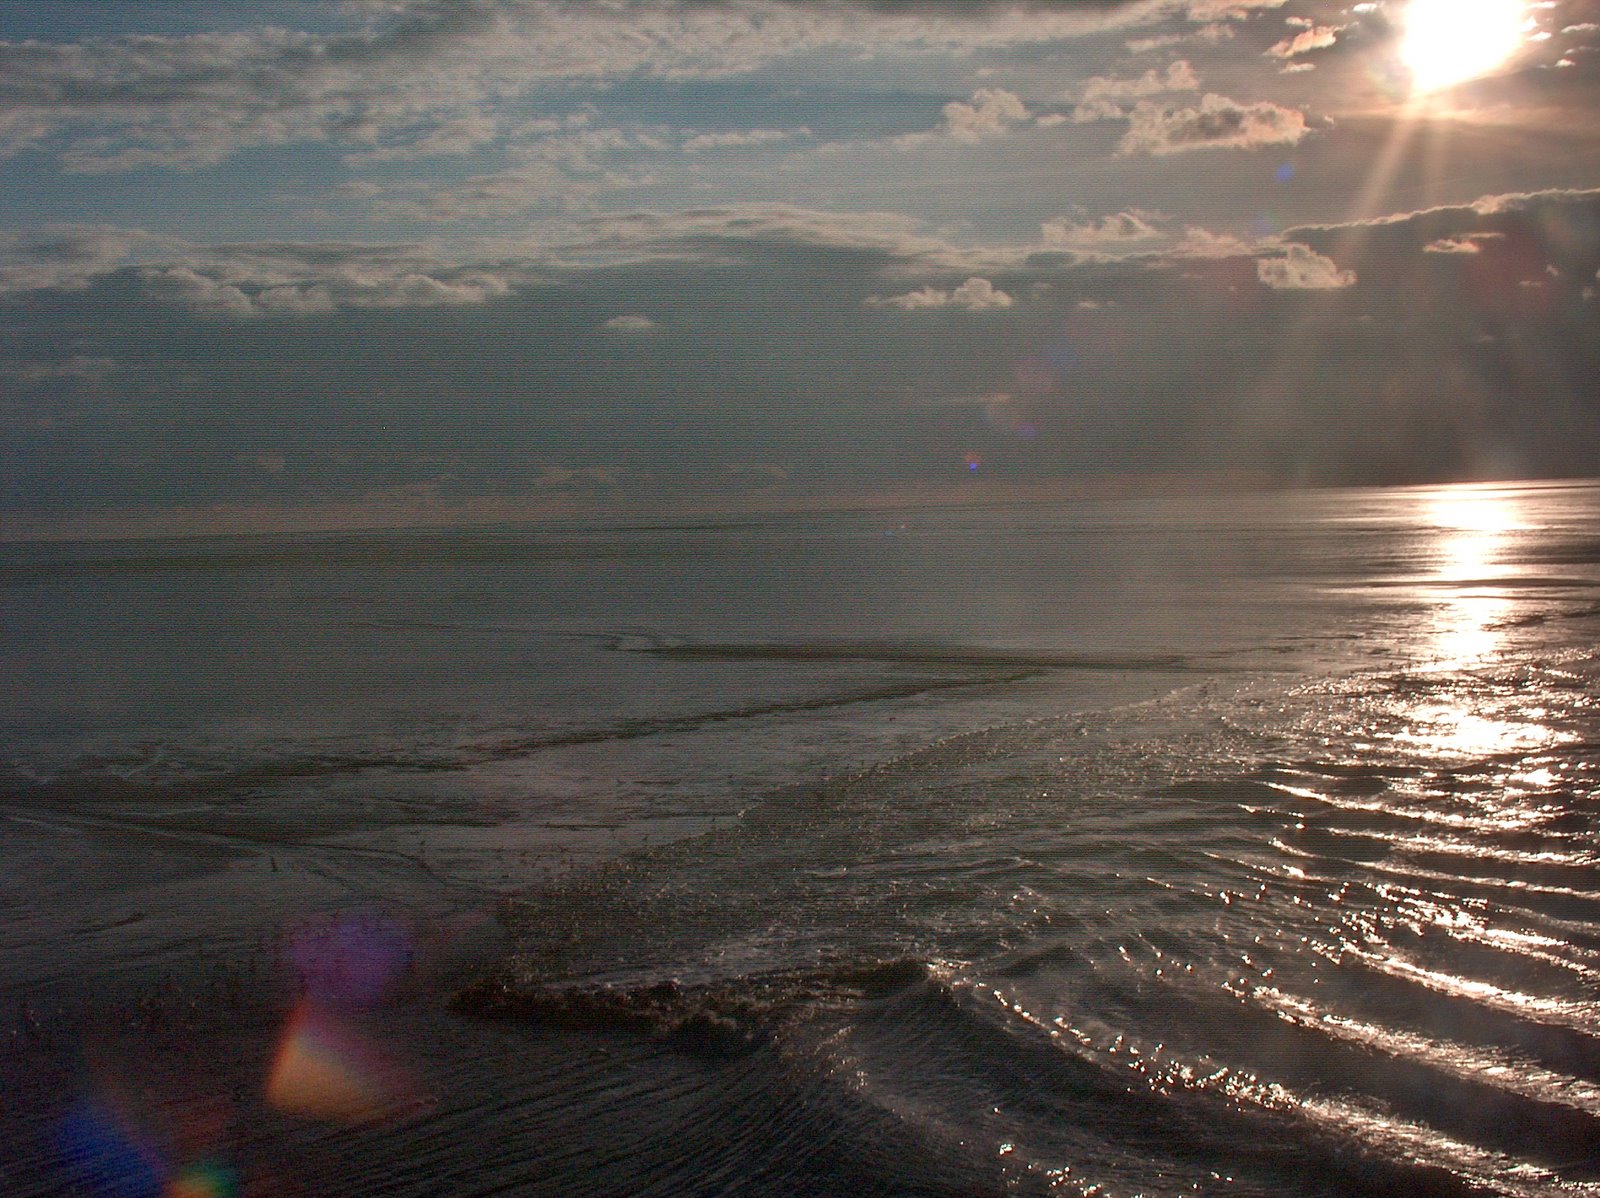 Waddenzee tussen Ameland en vasteland, 29 augustus 2007 ongeveer 19.00 uur